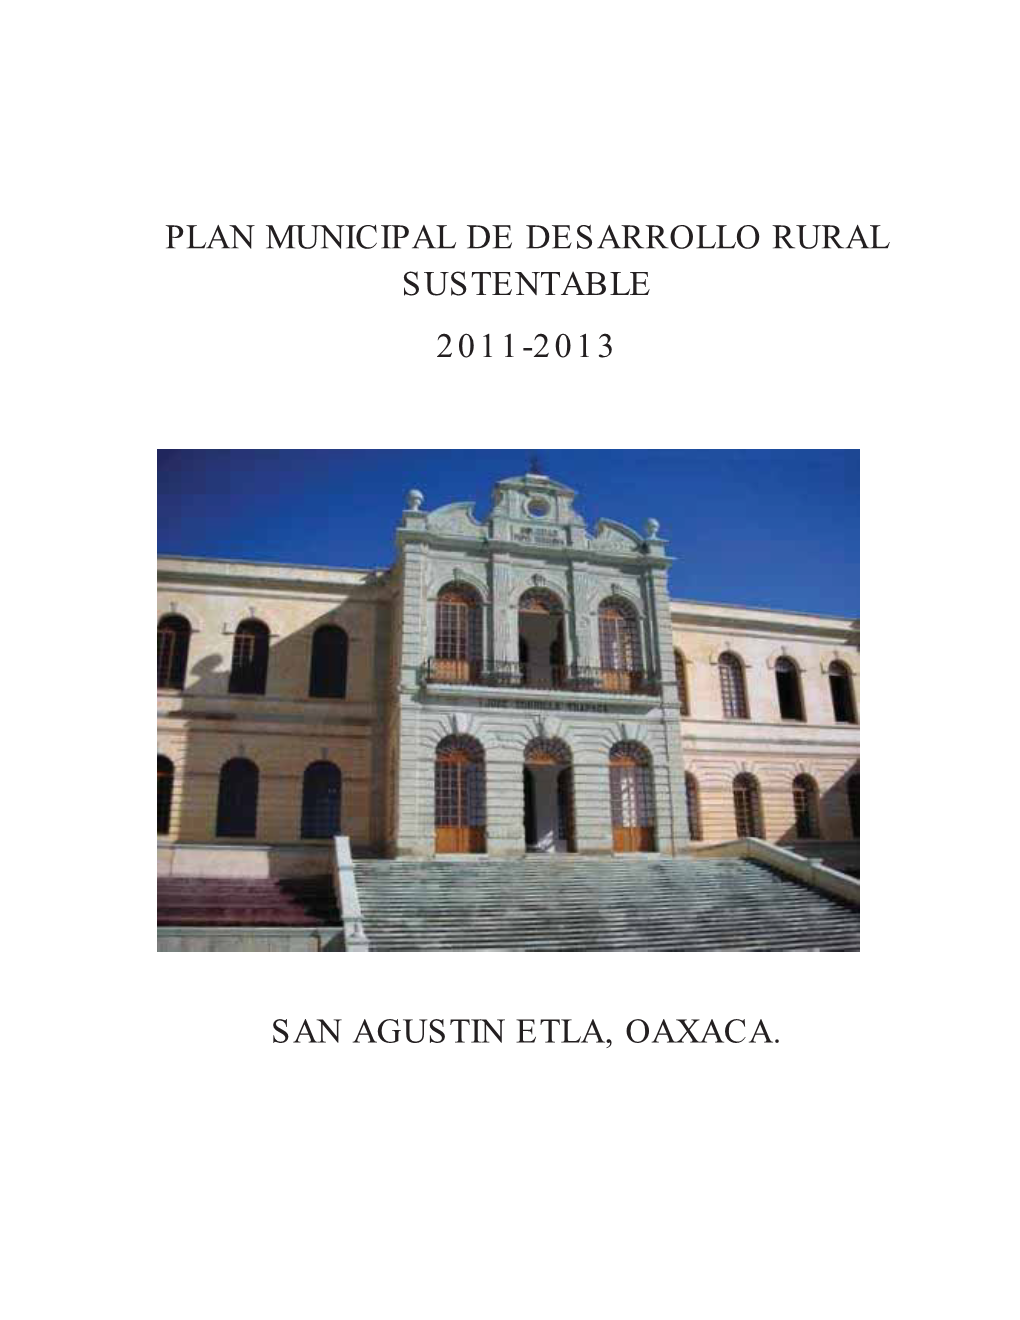 Plan Municipal De Desarrollo Rural Sustentable 2011-2013 San Agustin